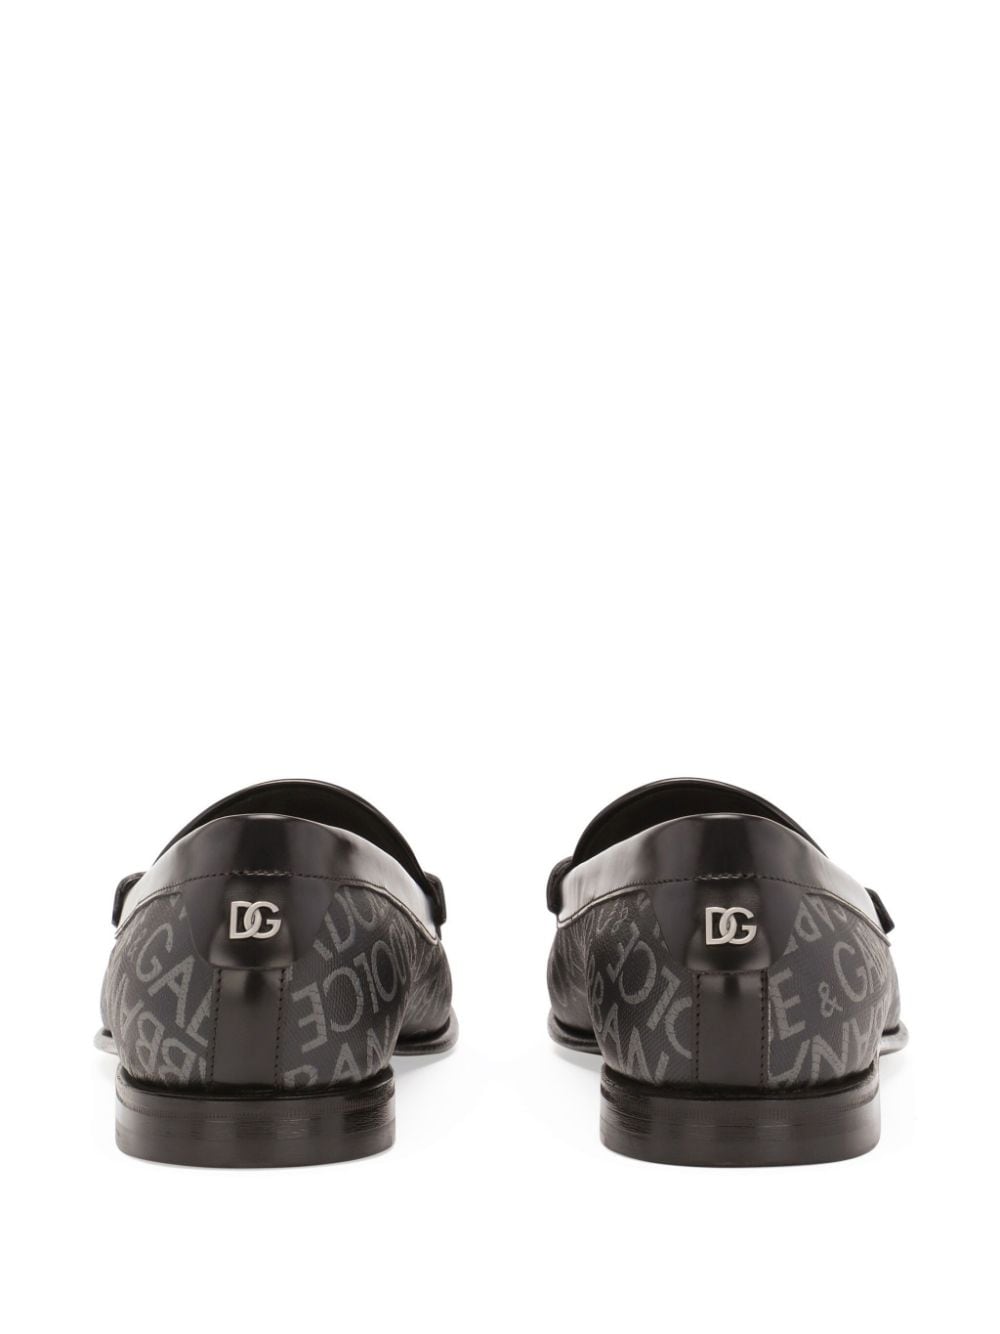 Dolce & Gabbana DOLCE & GABBANA- Allover Logo Leather Loafers